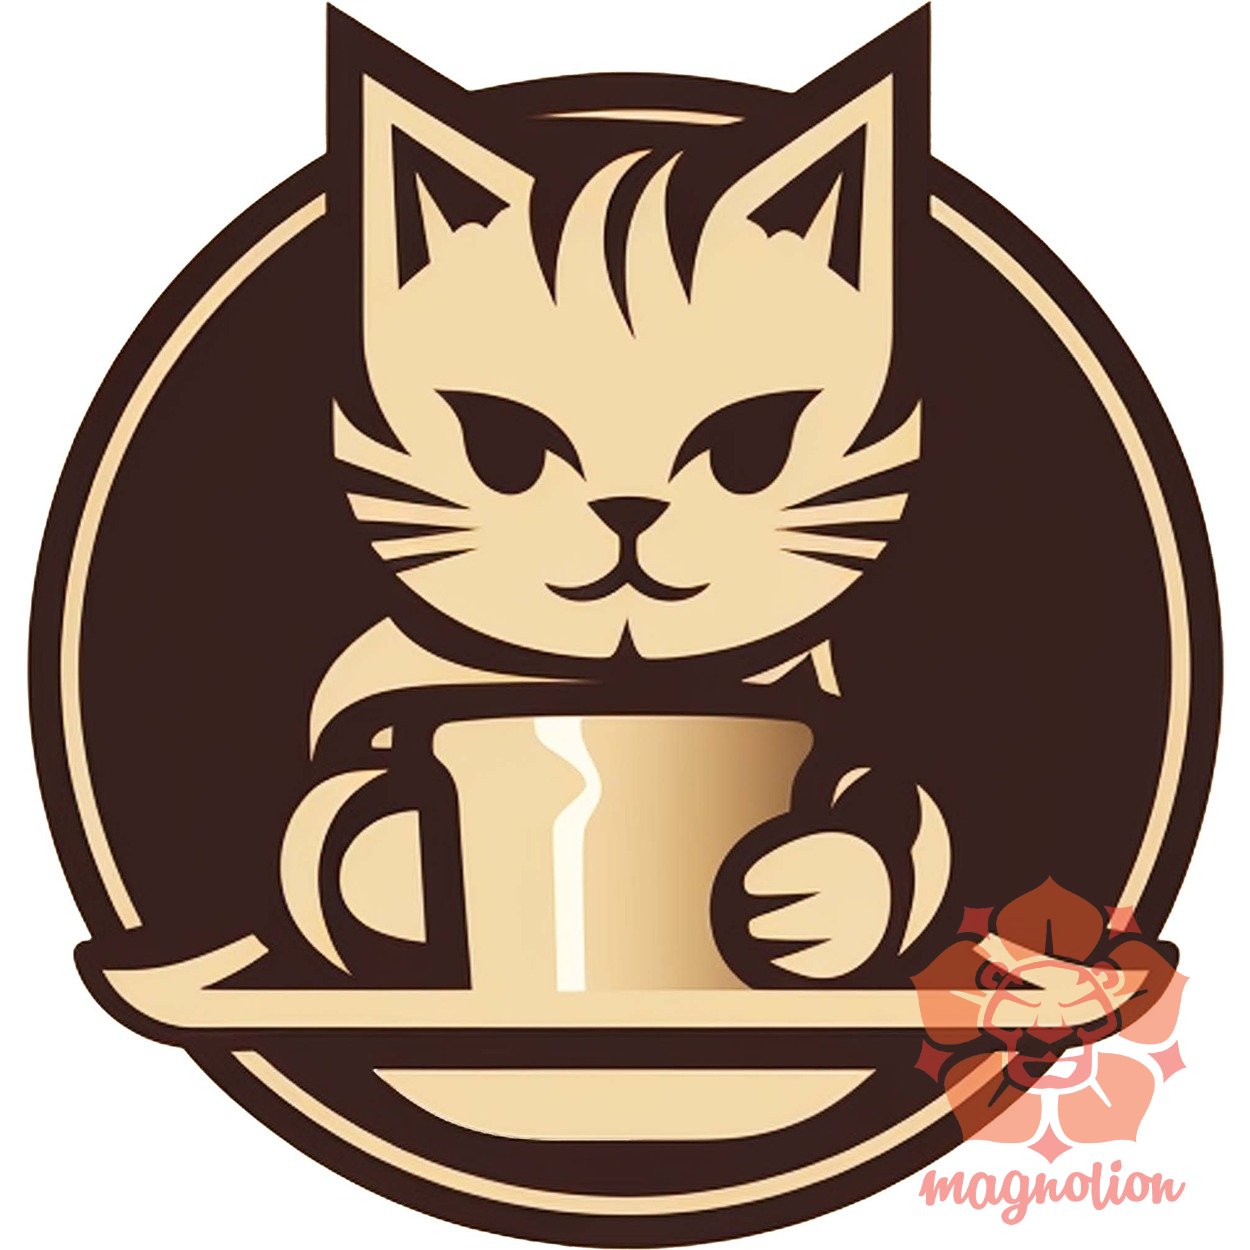 Macska és kávé v10